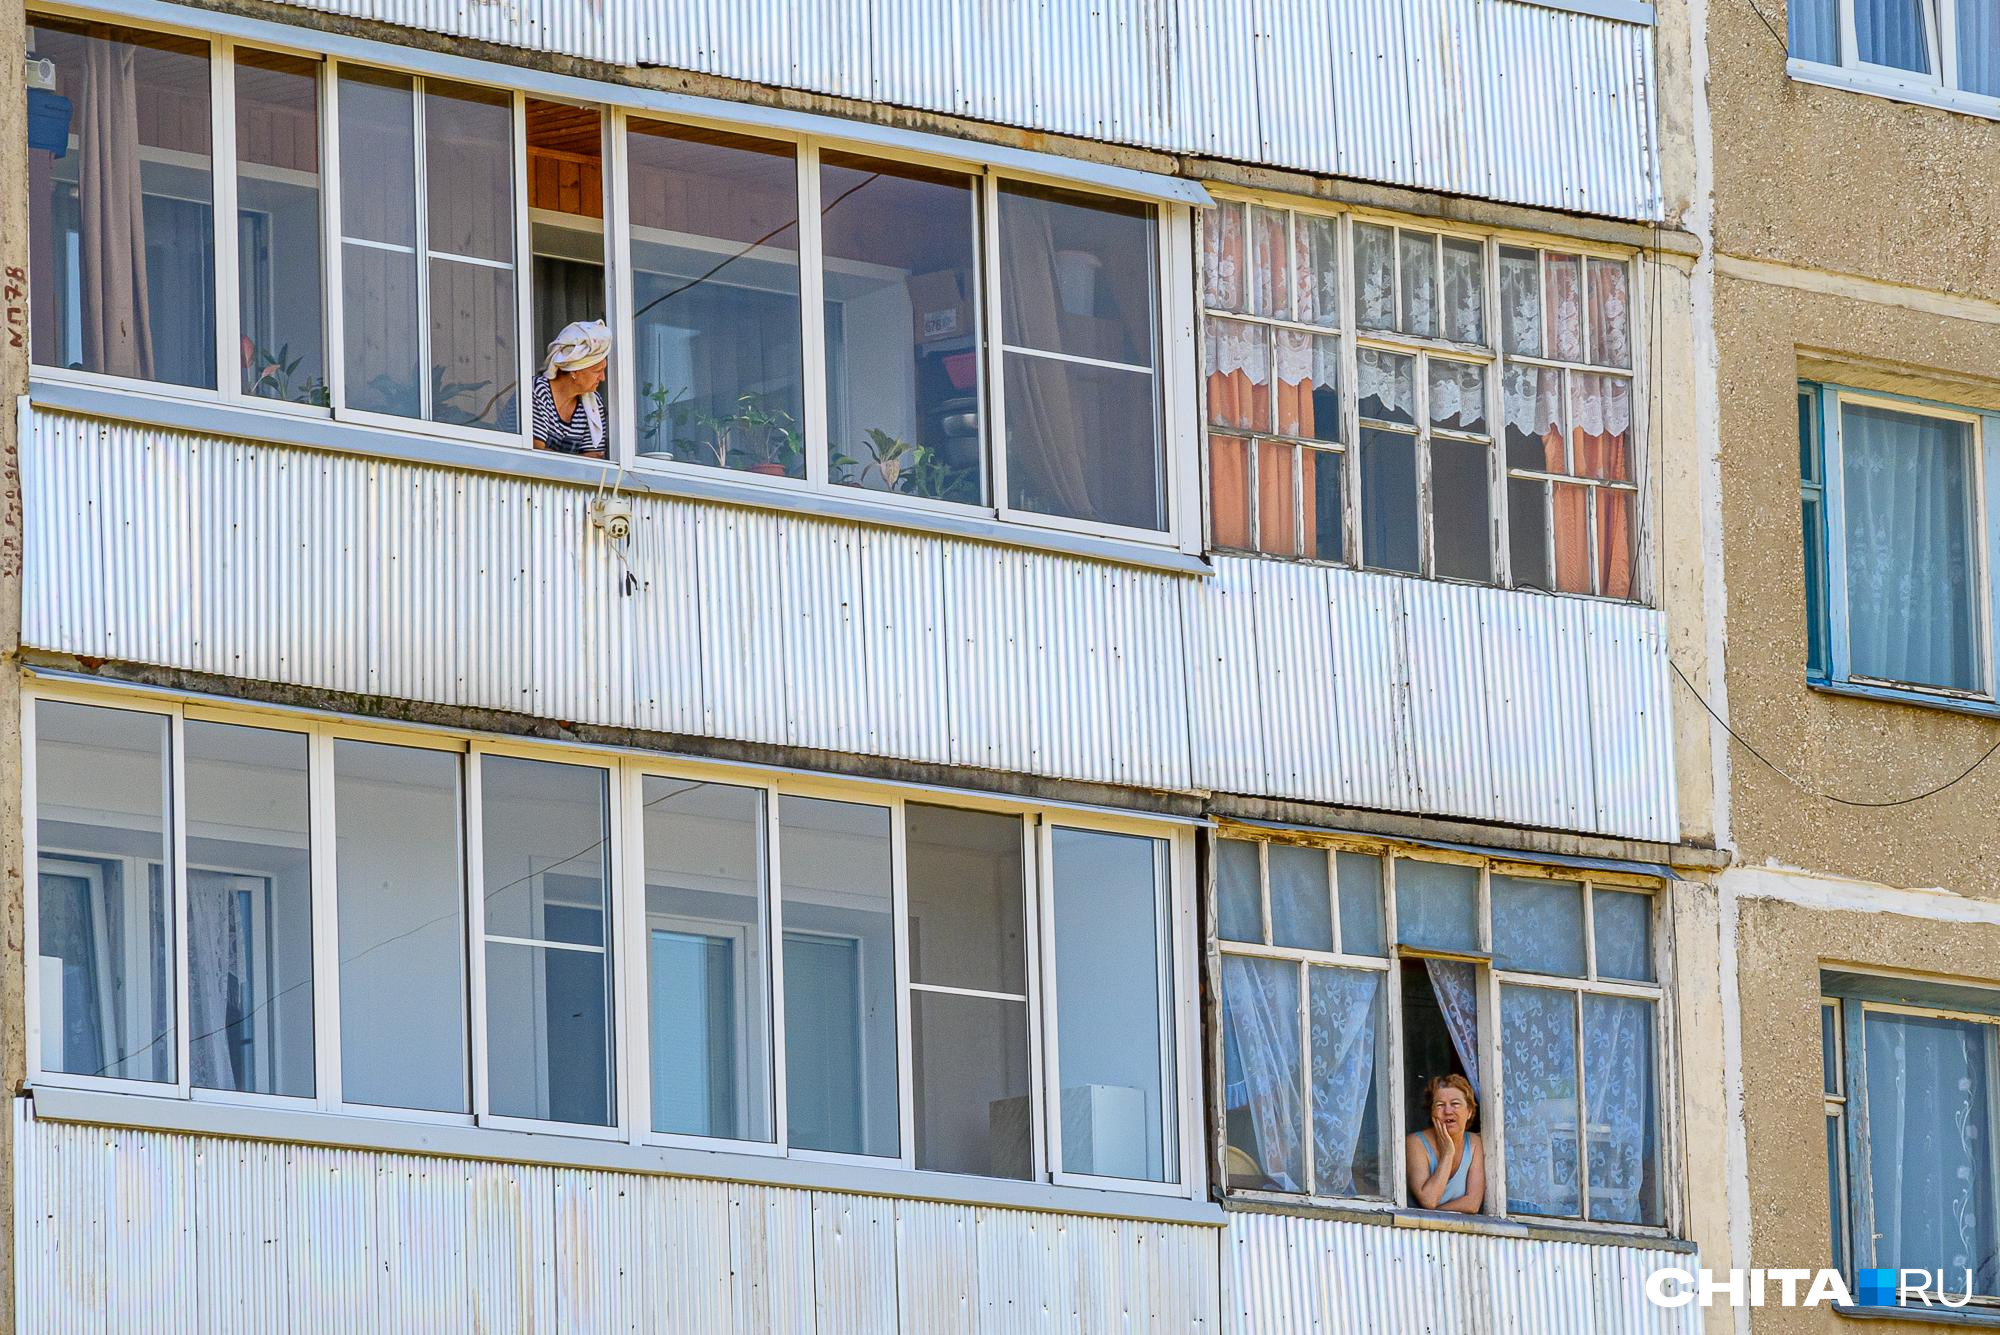 Девочку, выпавшую из окна в Краснокаменске, санавиацией доставили в Читу